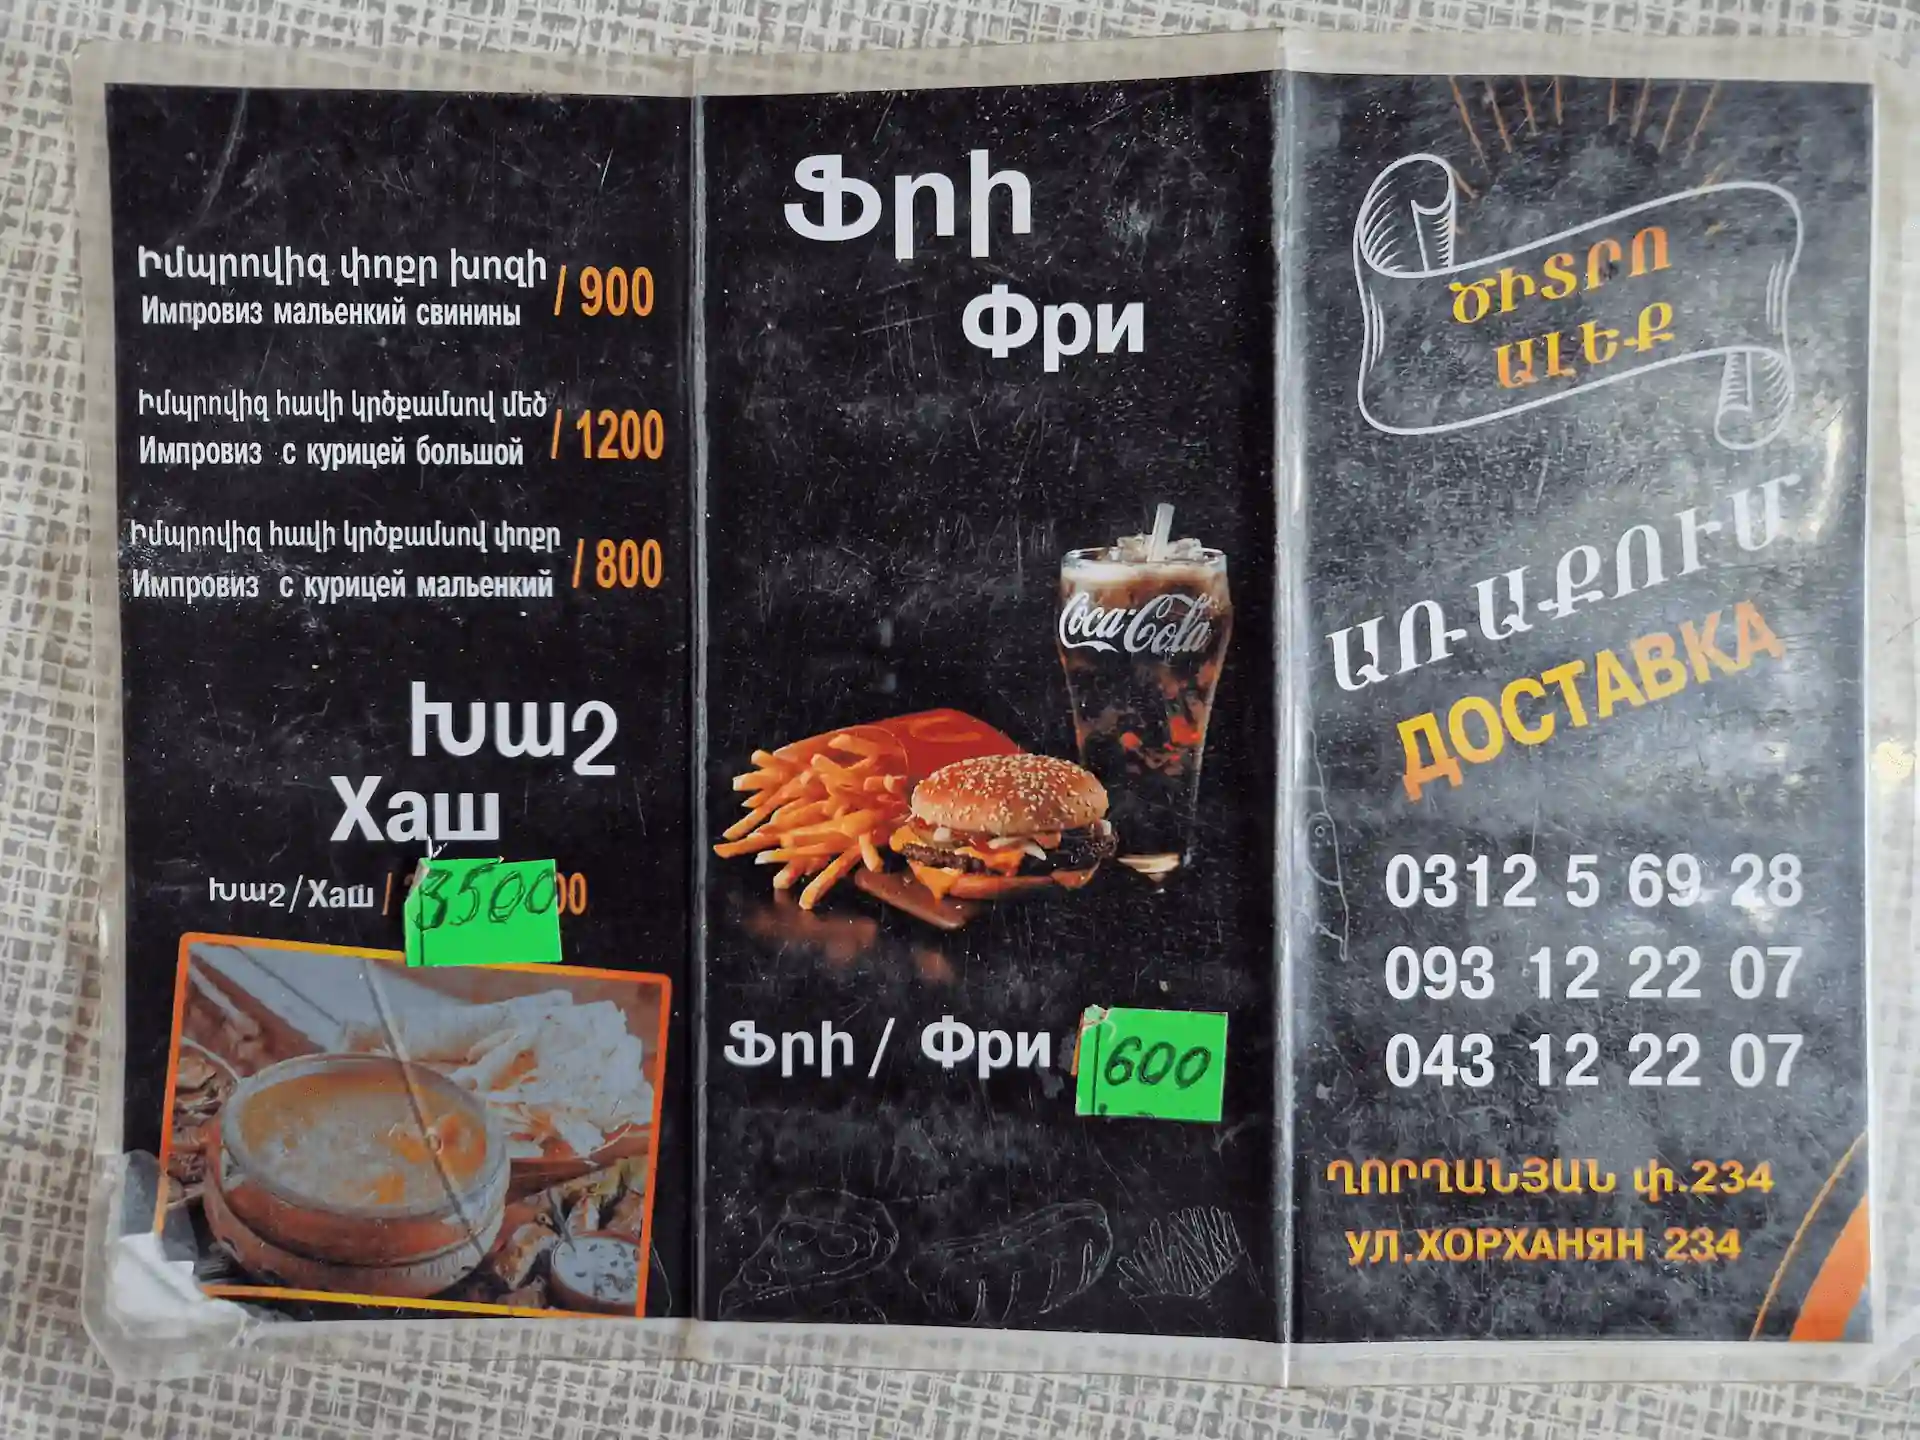 Menu du restaurant en russe et arménien uniquement, on voit une photo de soupe et une photo de hamburger.